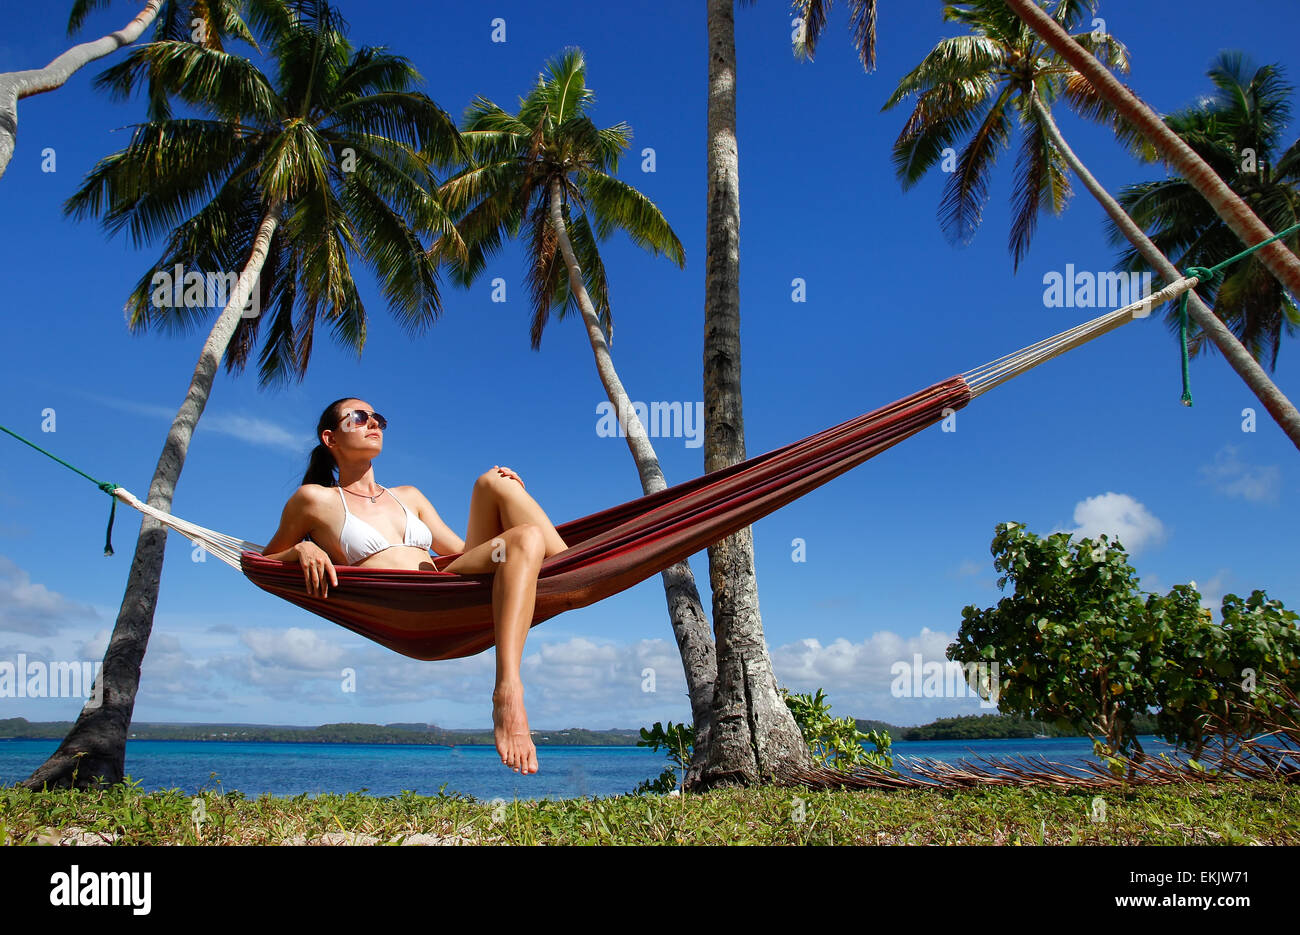 Young woman in bikini sitting in a hammock between palm trees, Ofu island, Vavau group, Tonga Stock Photo